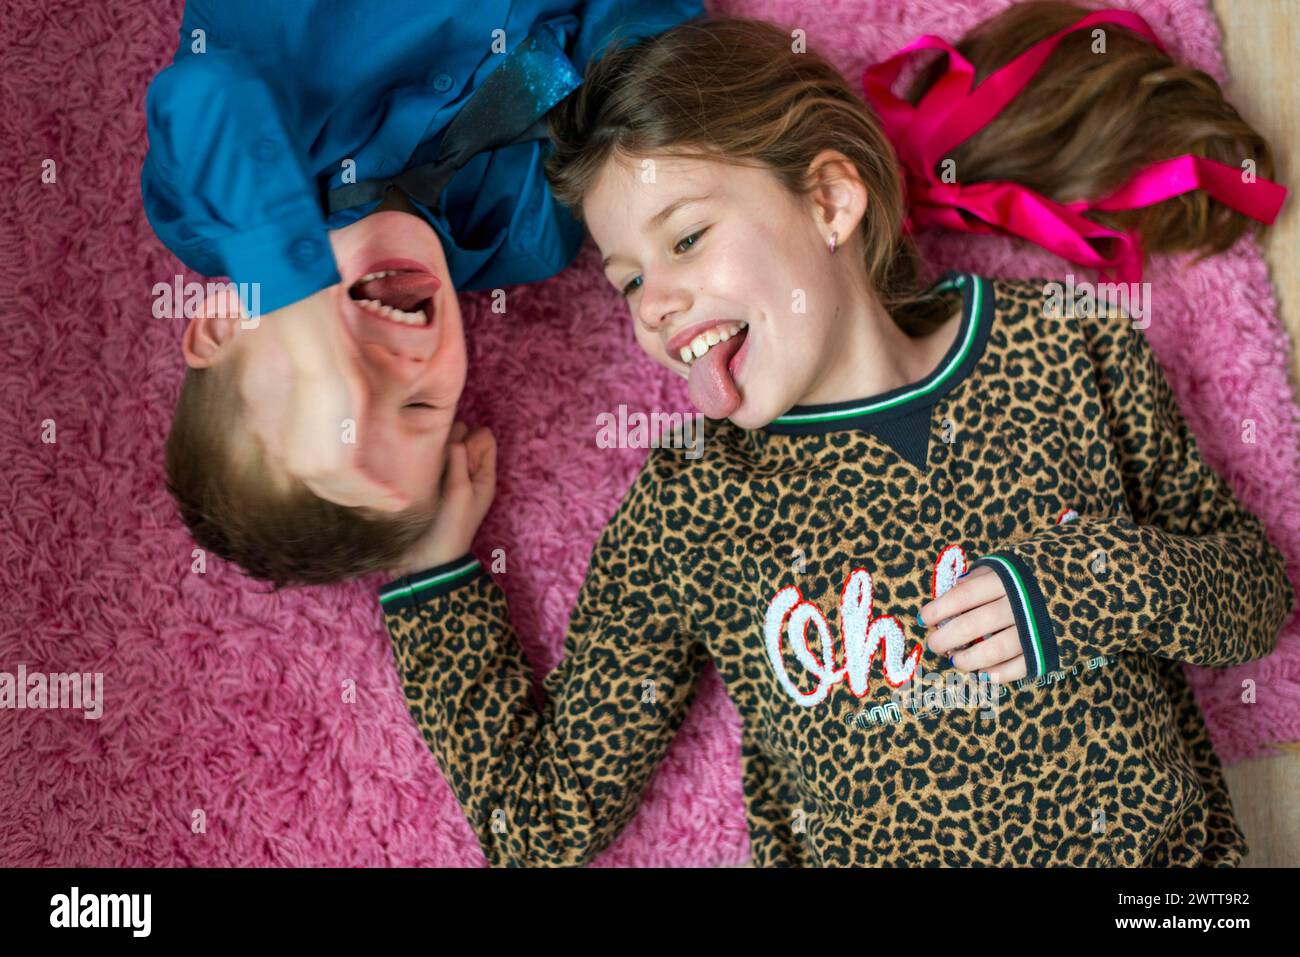 Zwei Kinder machen lustige Gesichter, während sie auf einem rosa Teppich liegen. Stockfoto